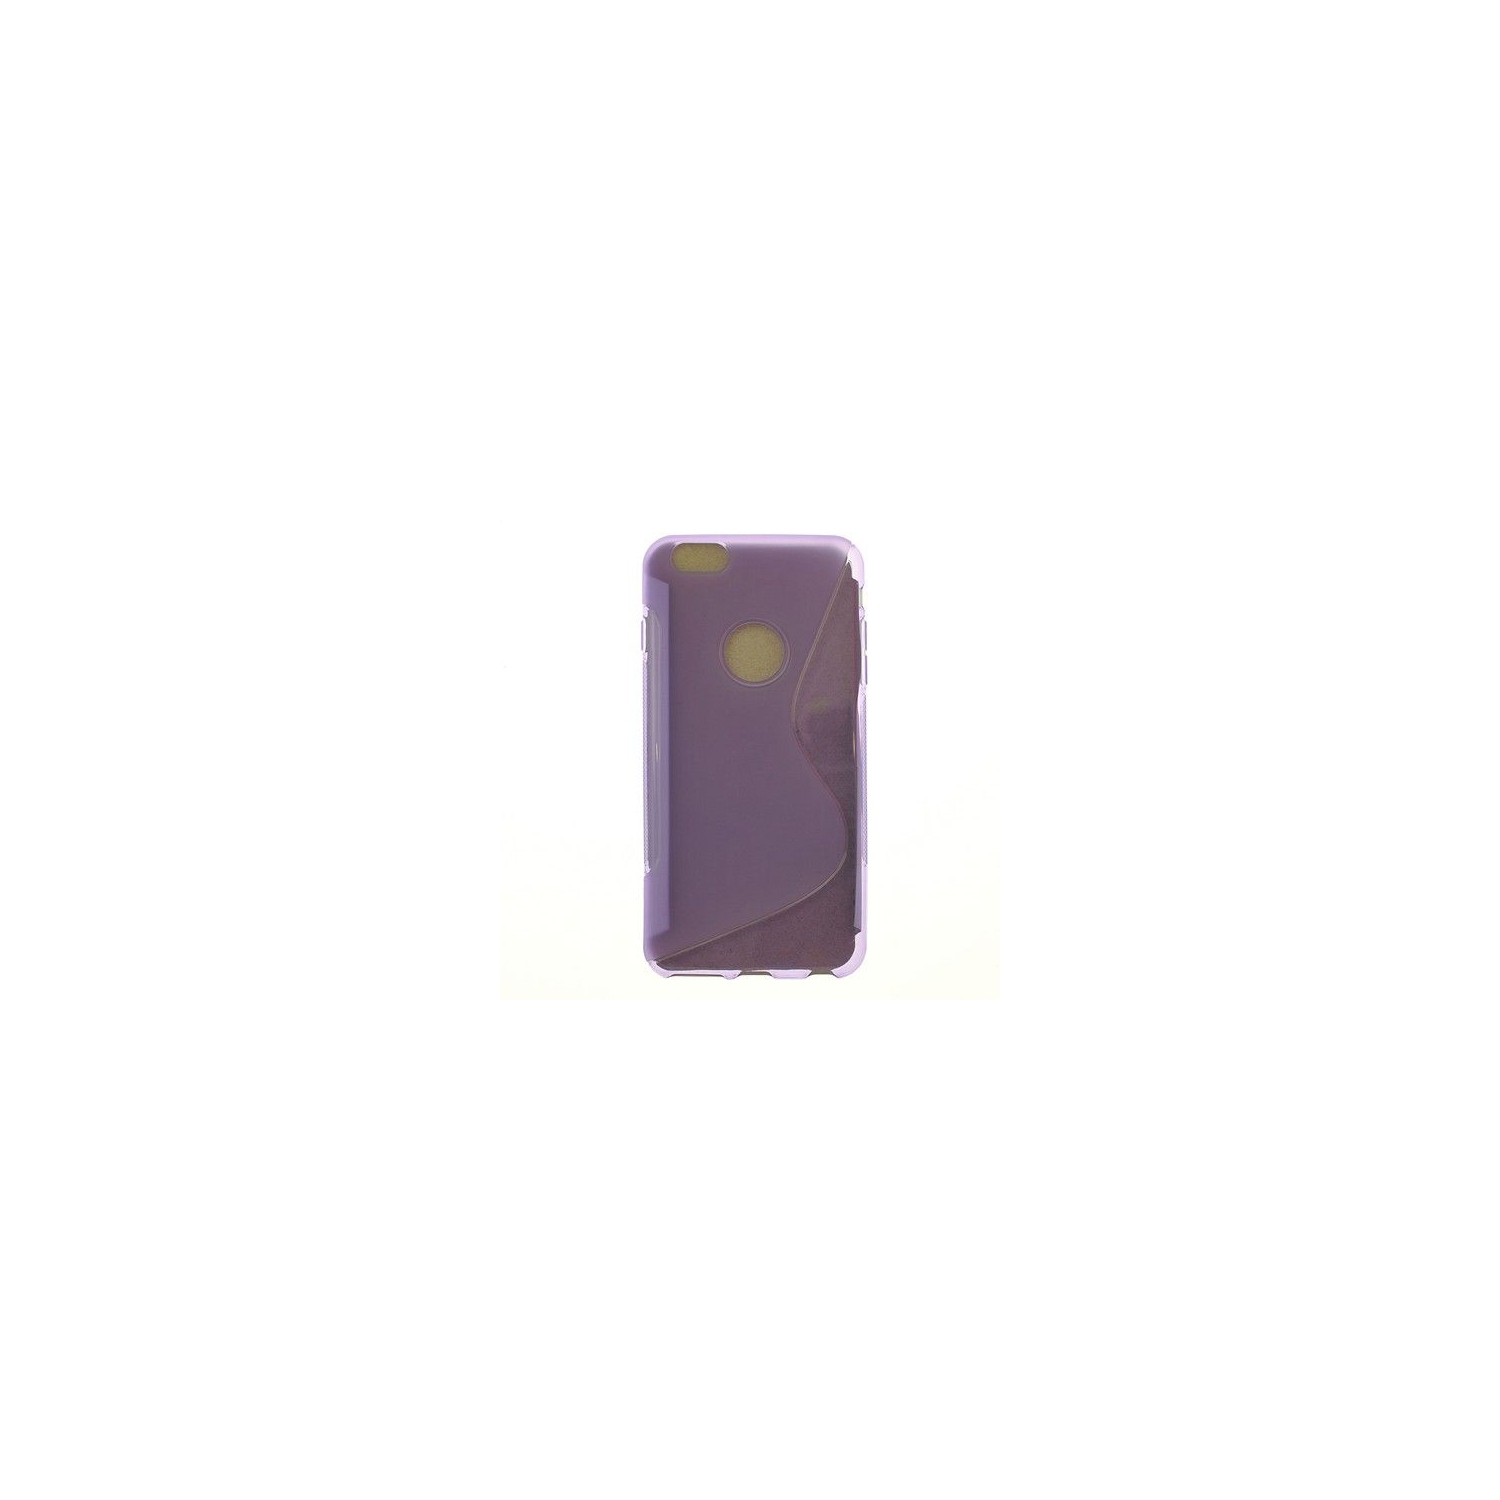 Iphone 6 Plus, Iphone 6s Plus S Line Design Soft Case, Purple